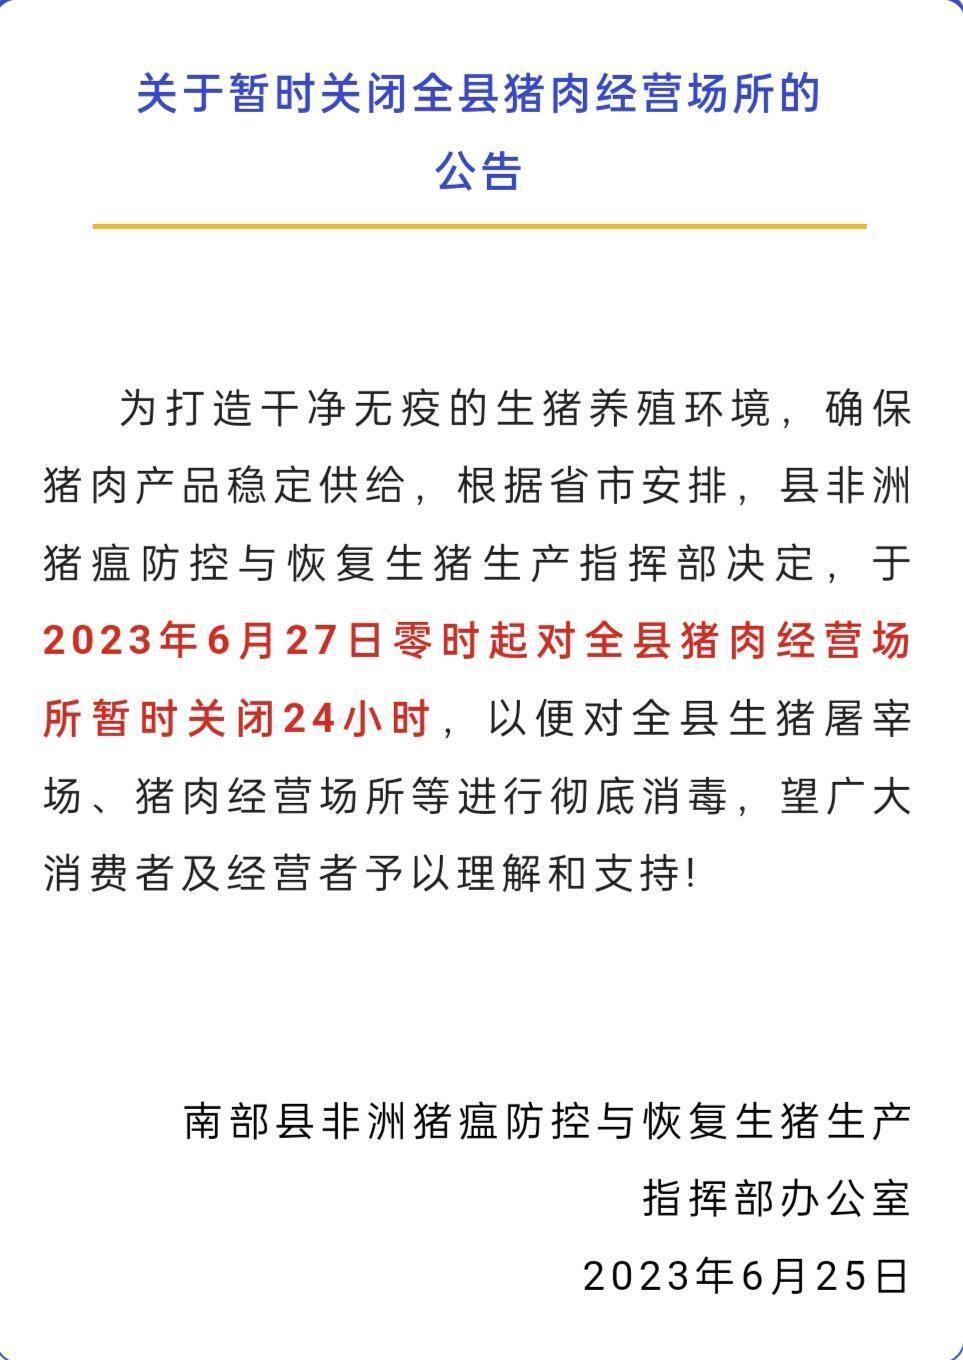 四川南部县发布公告：为彻底消毒，6月27日零时起关闭全县猪肉经营场所24小时